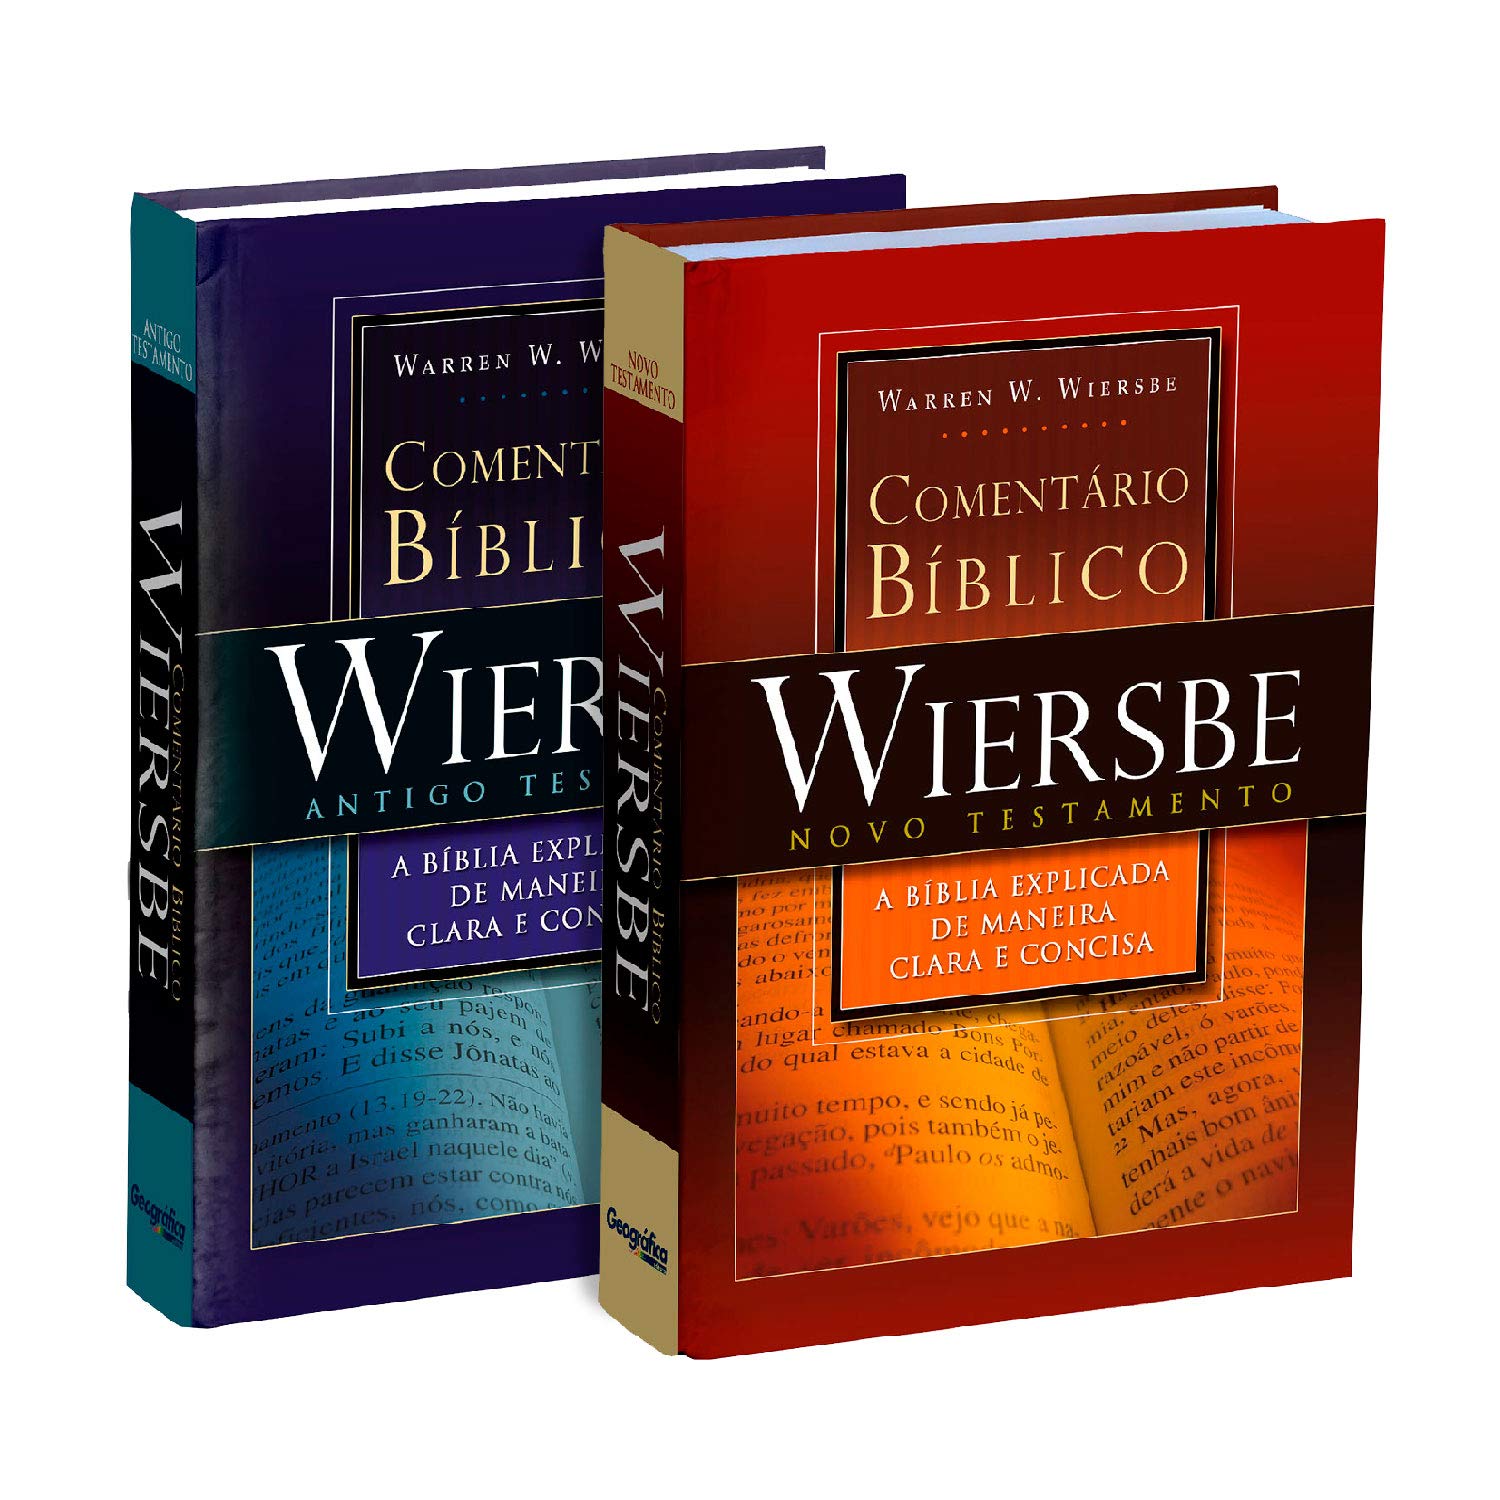 Comentário Bíblico Outline Wiersbe - 2 Volumes